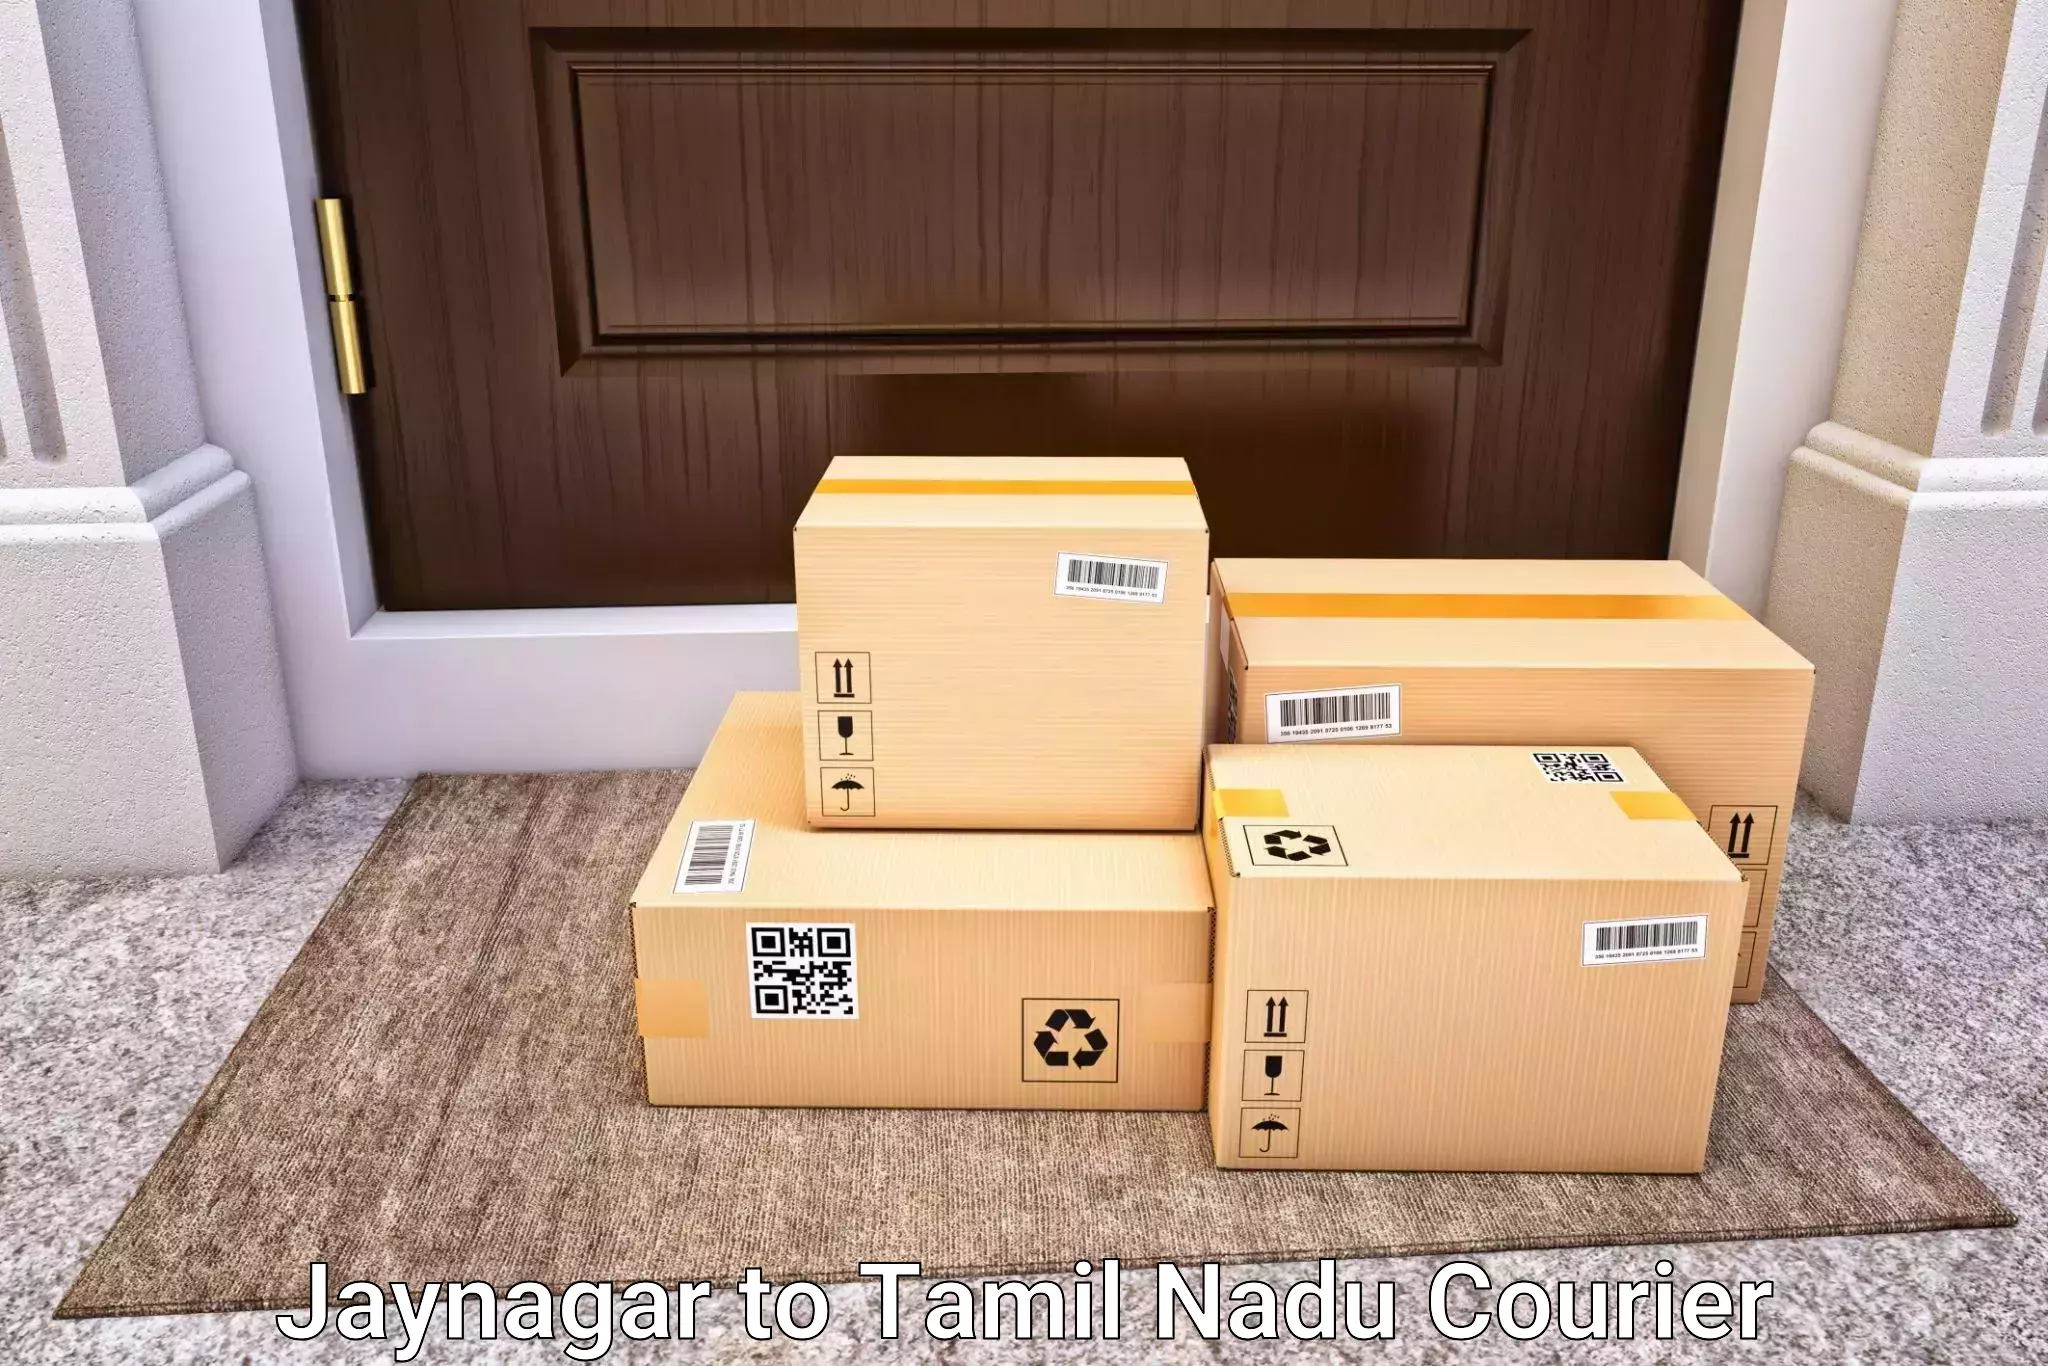 Luggage shipping service Jaynagar to Kodumudi